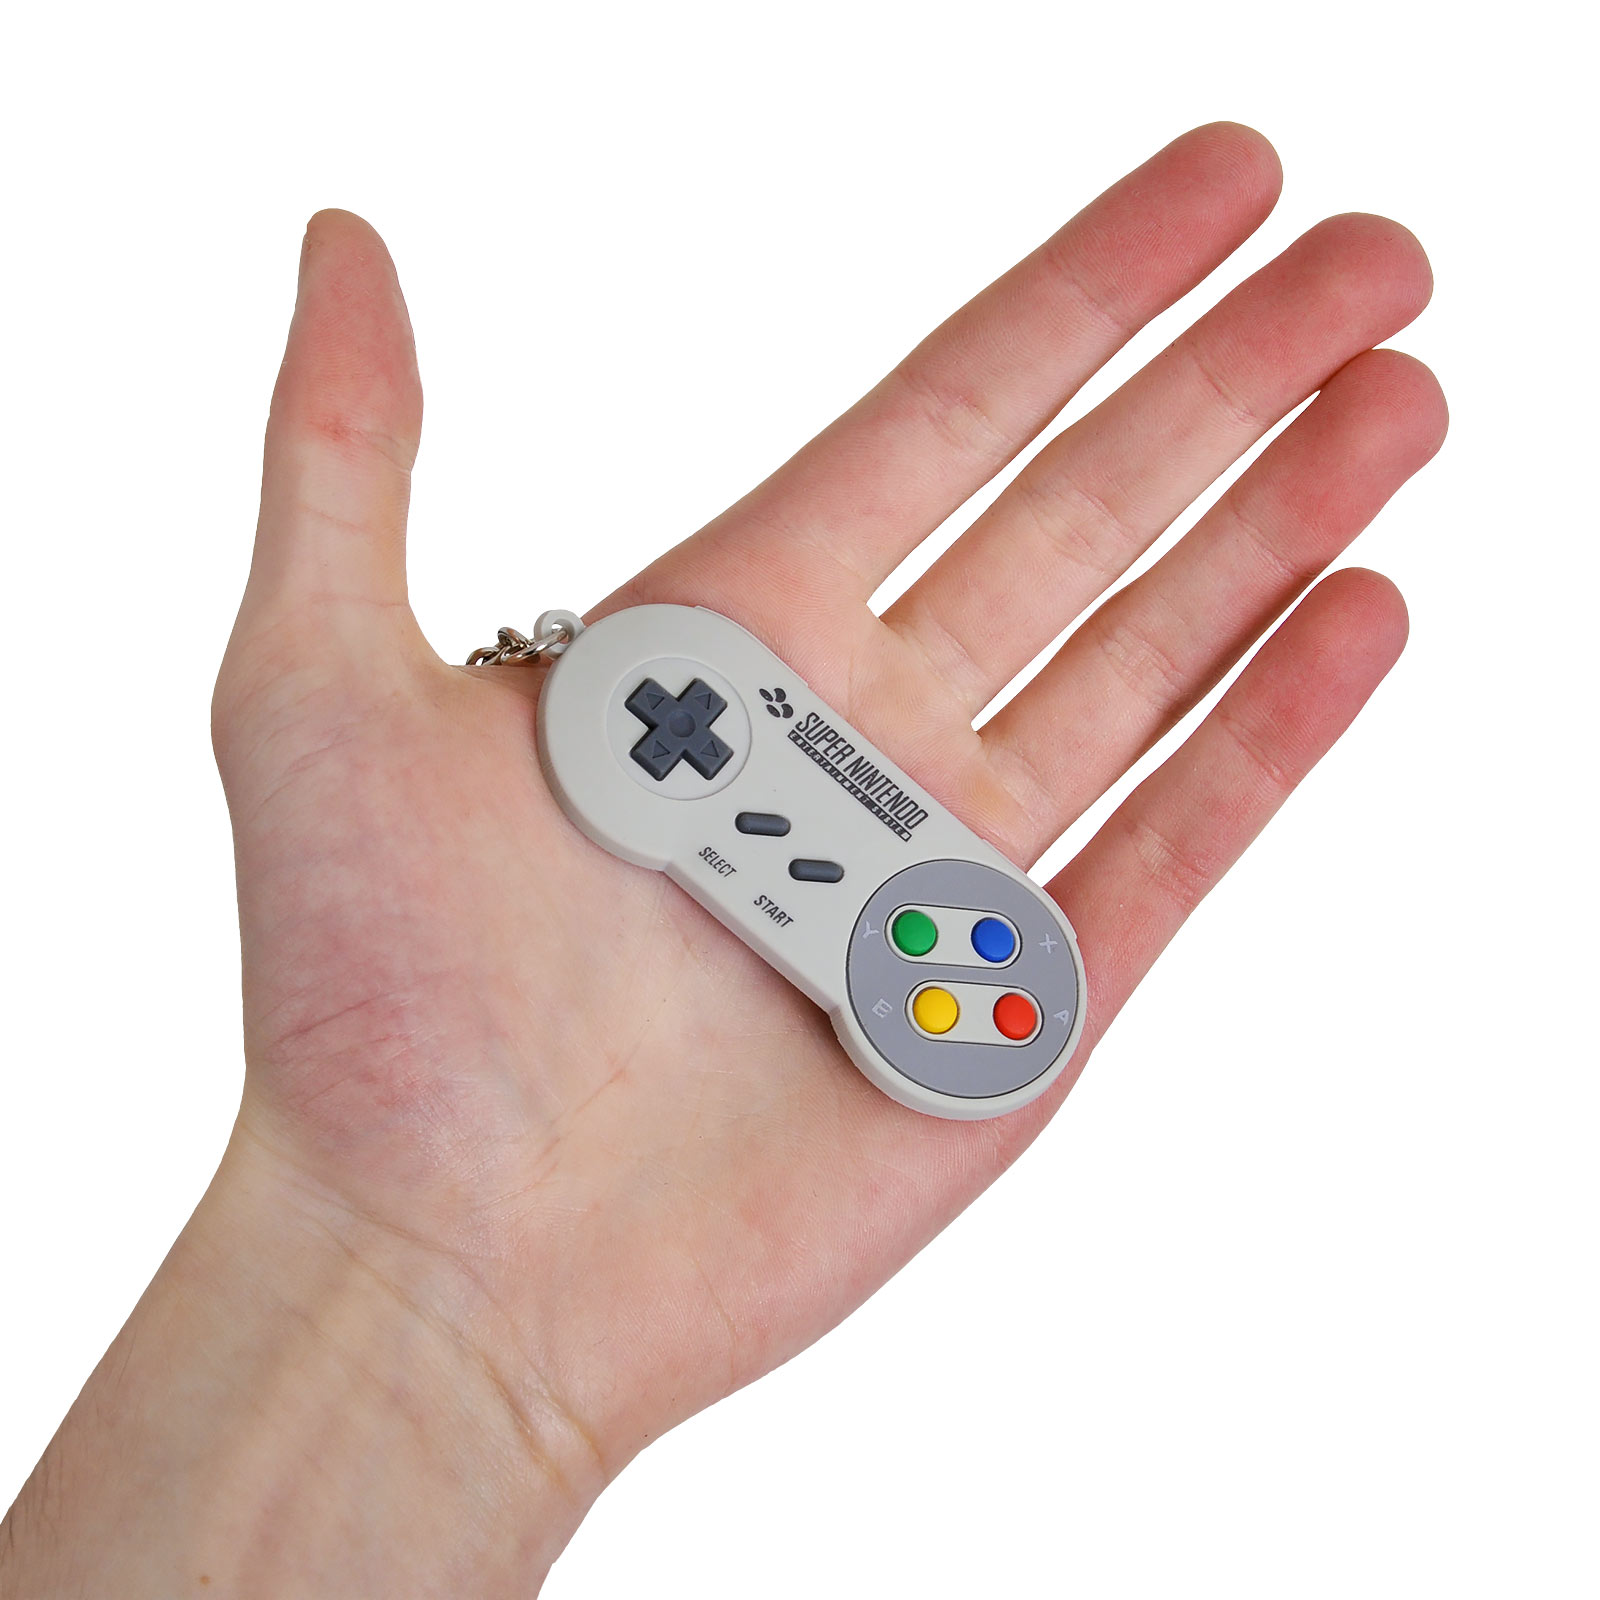 Nintendo - Porte-clés manette SNES